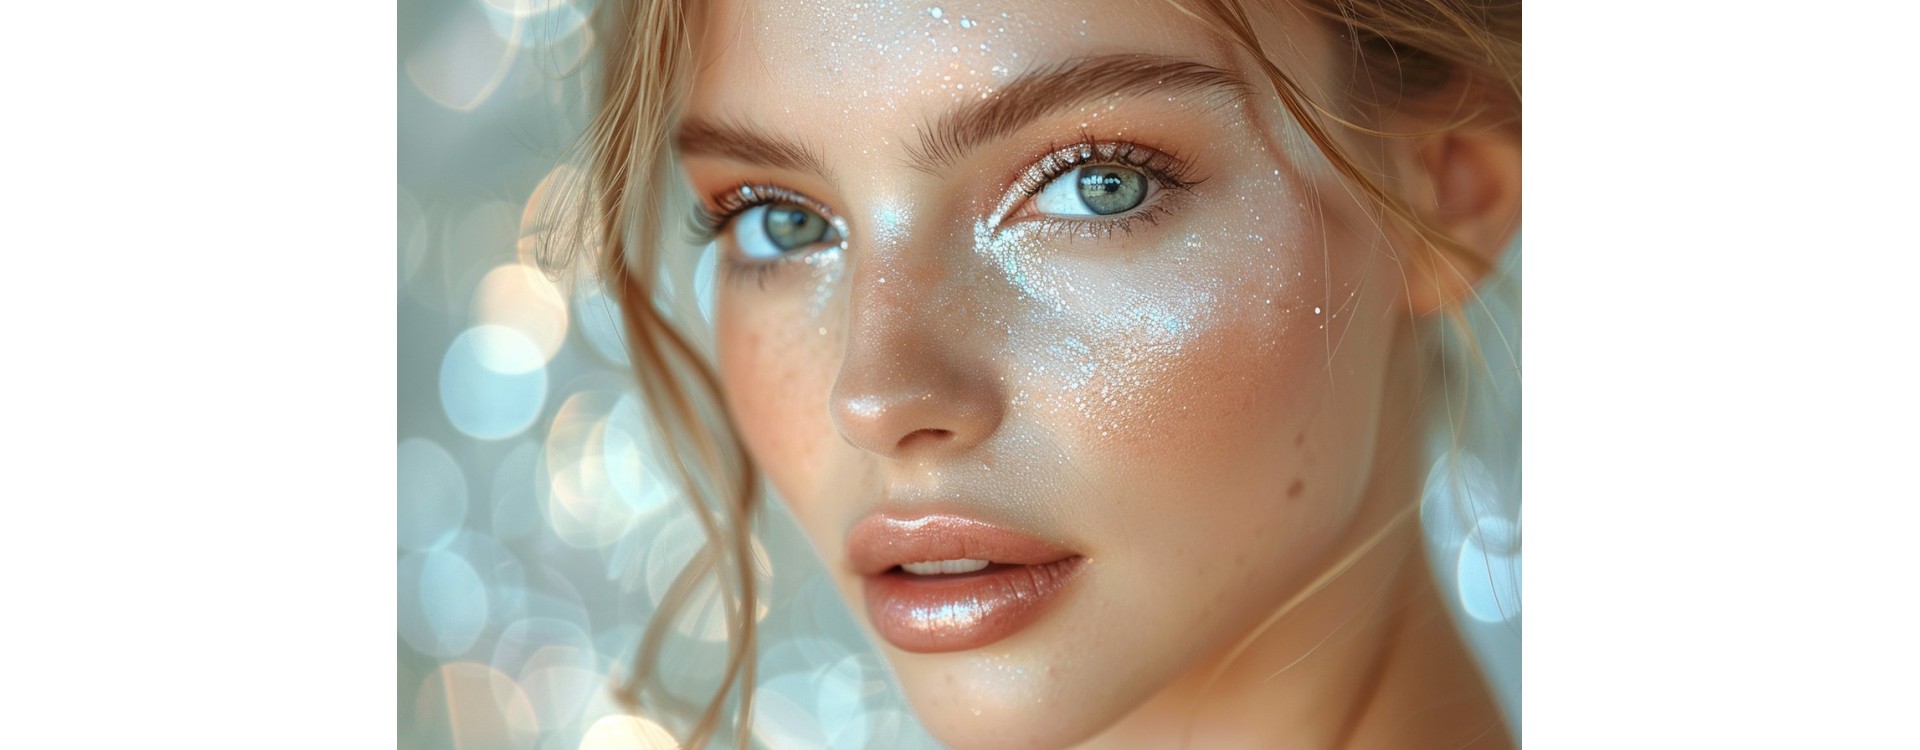 Pearl skin : Tout savoir sur la beauté de la peau nacrée